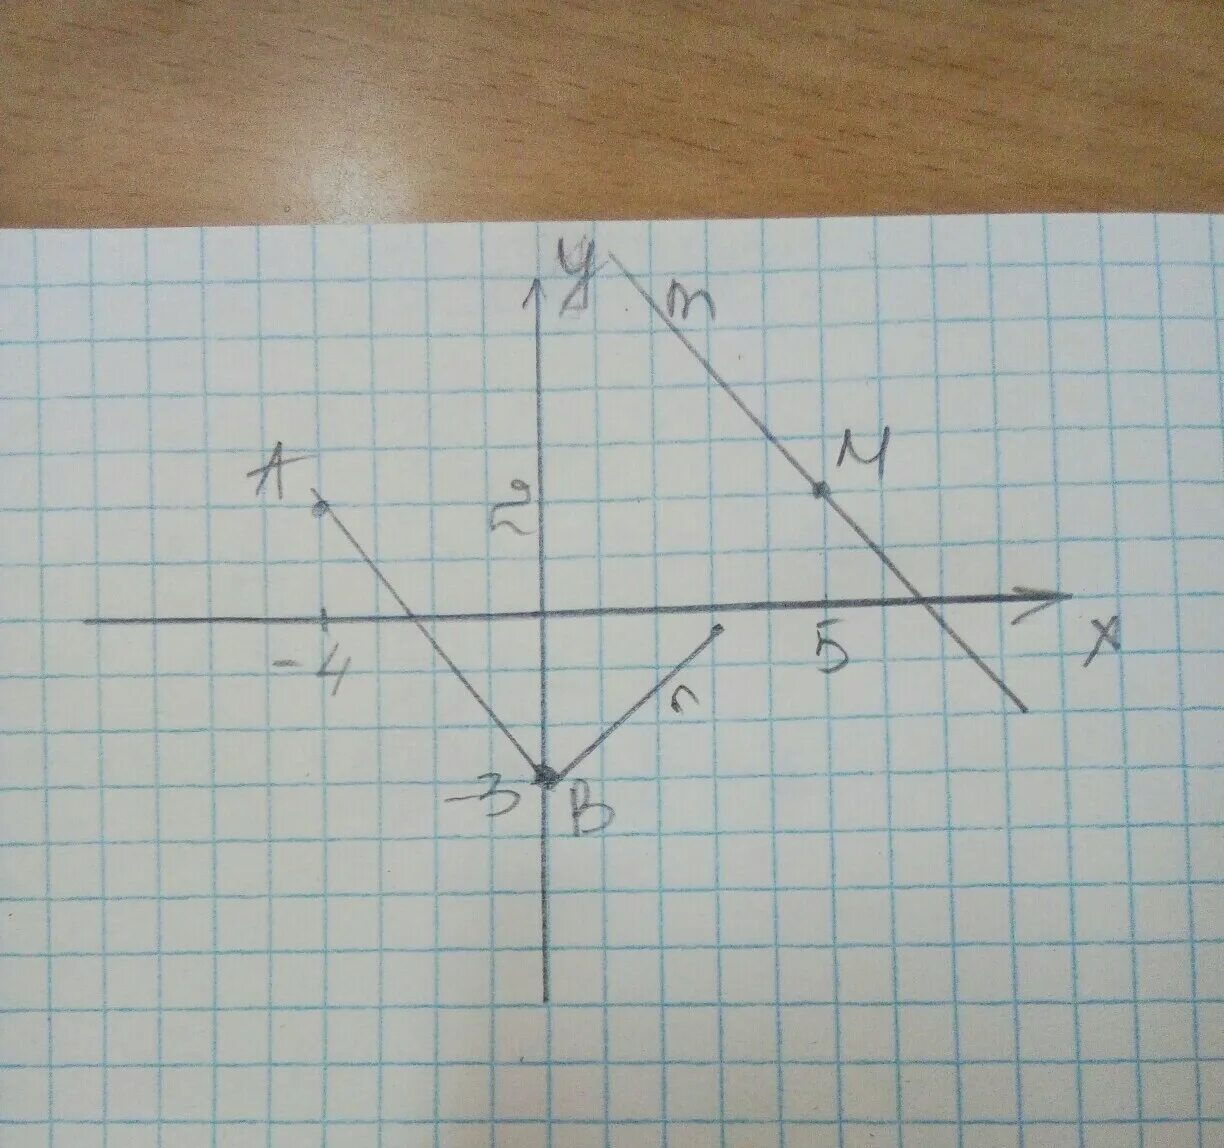 Отметьте на координатной плоскости точки 2 5. Отметьте на координатной плоскости точки m. Отметьте на координатной плоскости точки м -3,. Отметьте на координатной плоскости точки а -4 2.